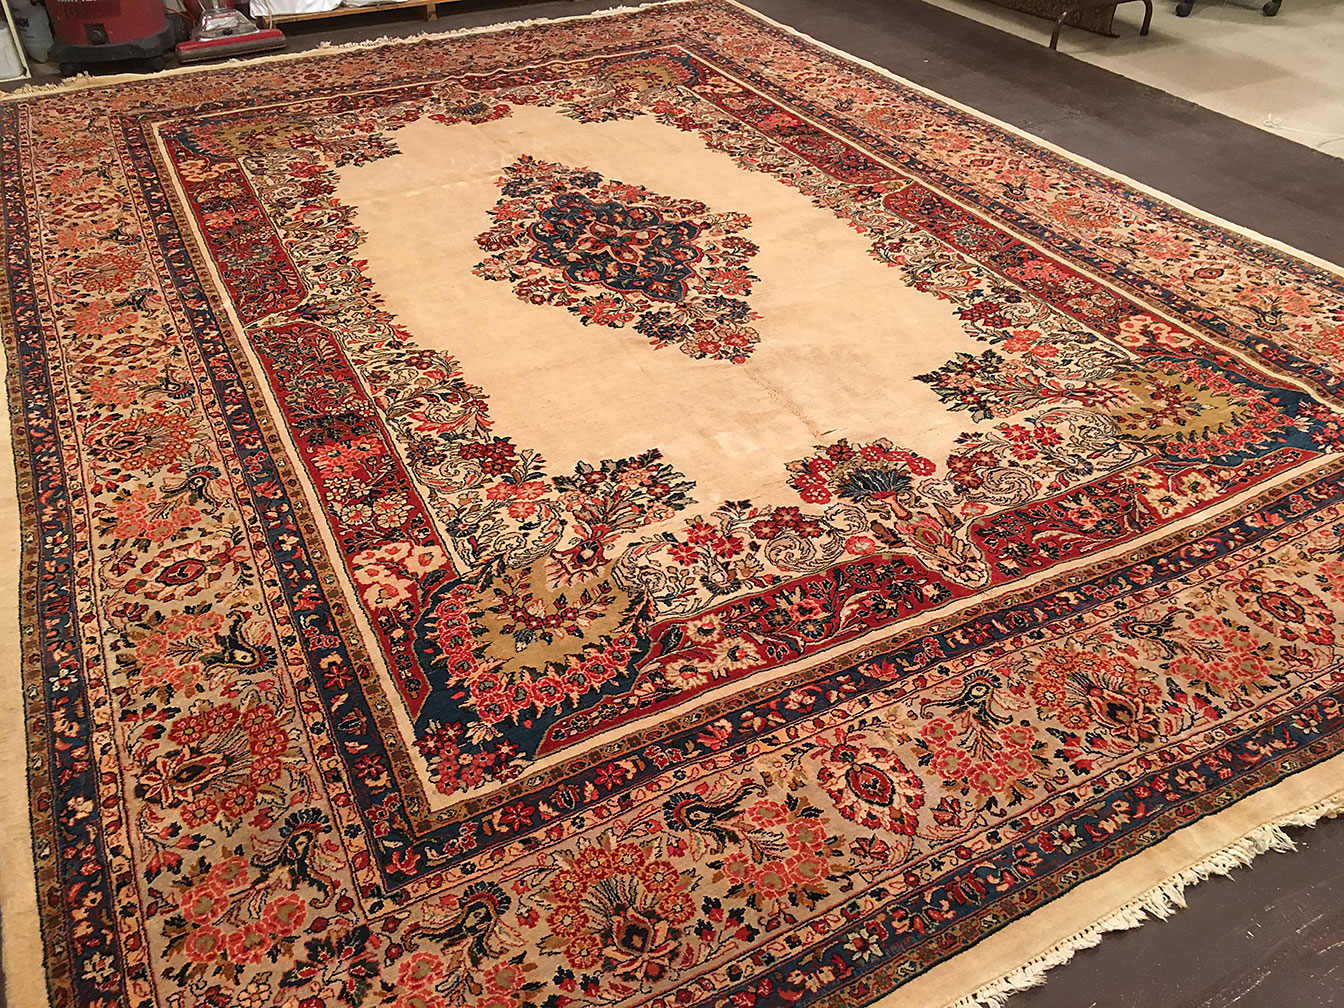 Vintage sarouk Carpet - # 51013